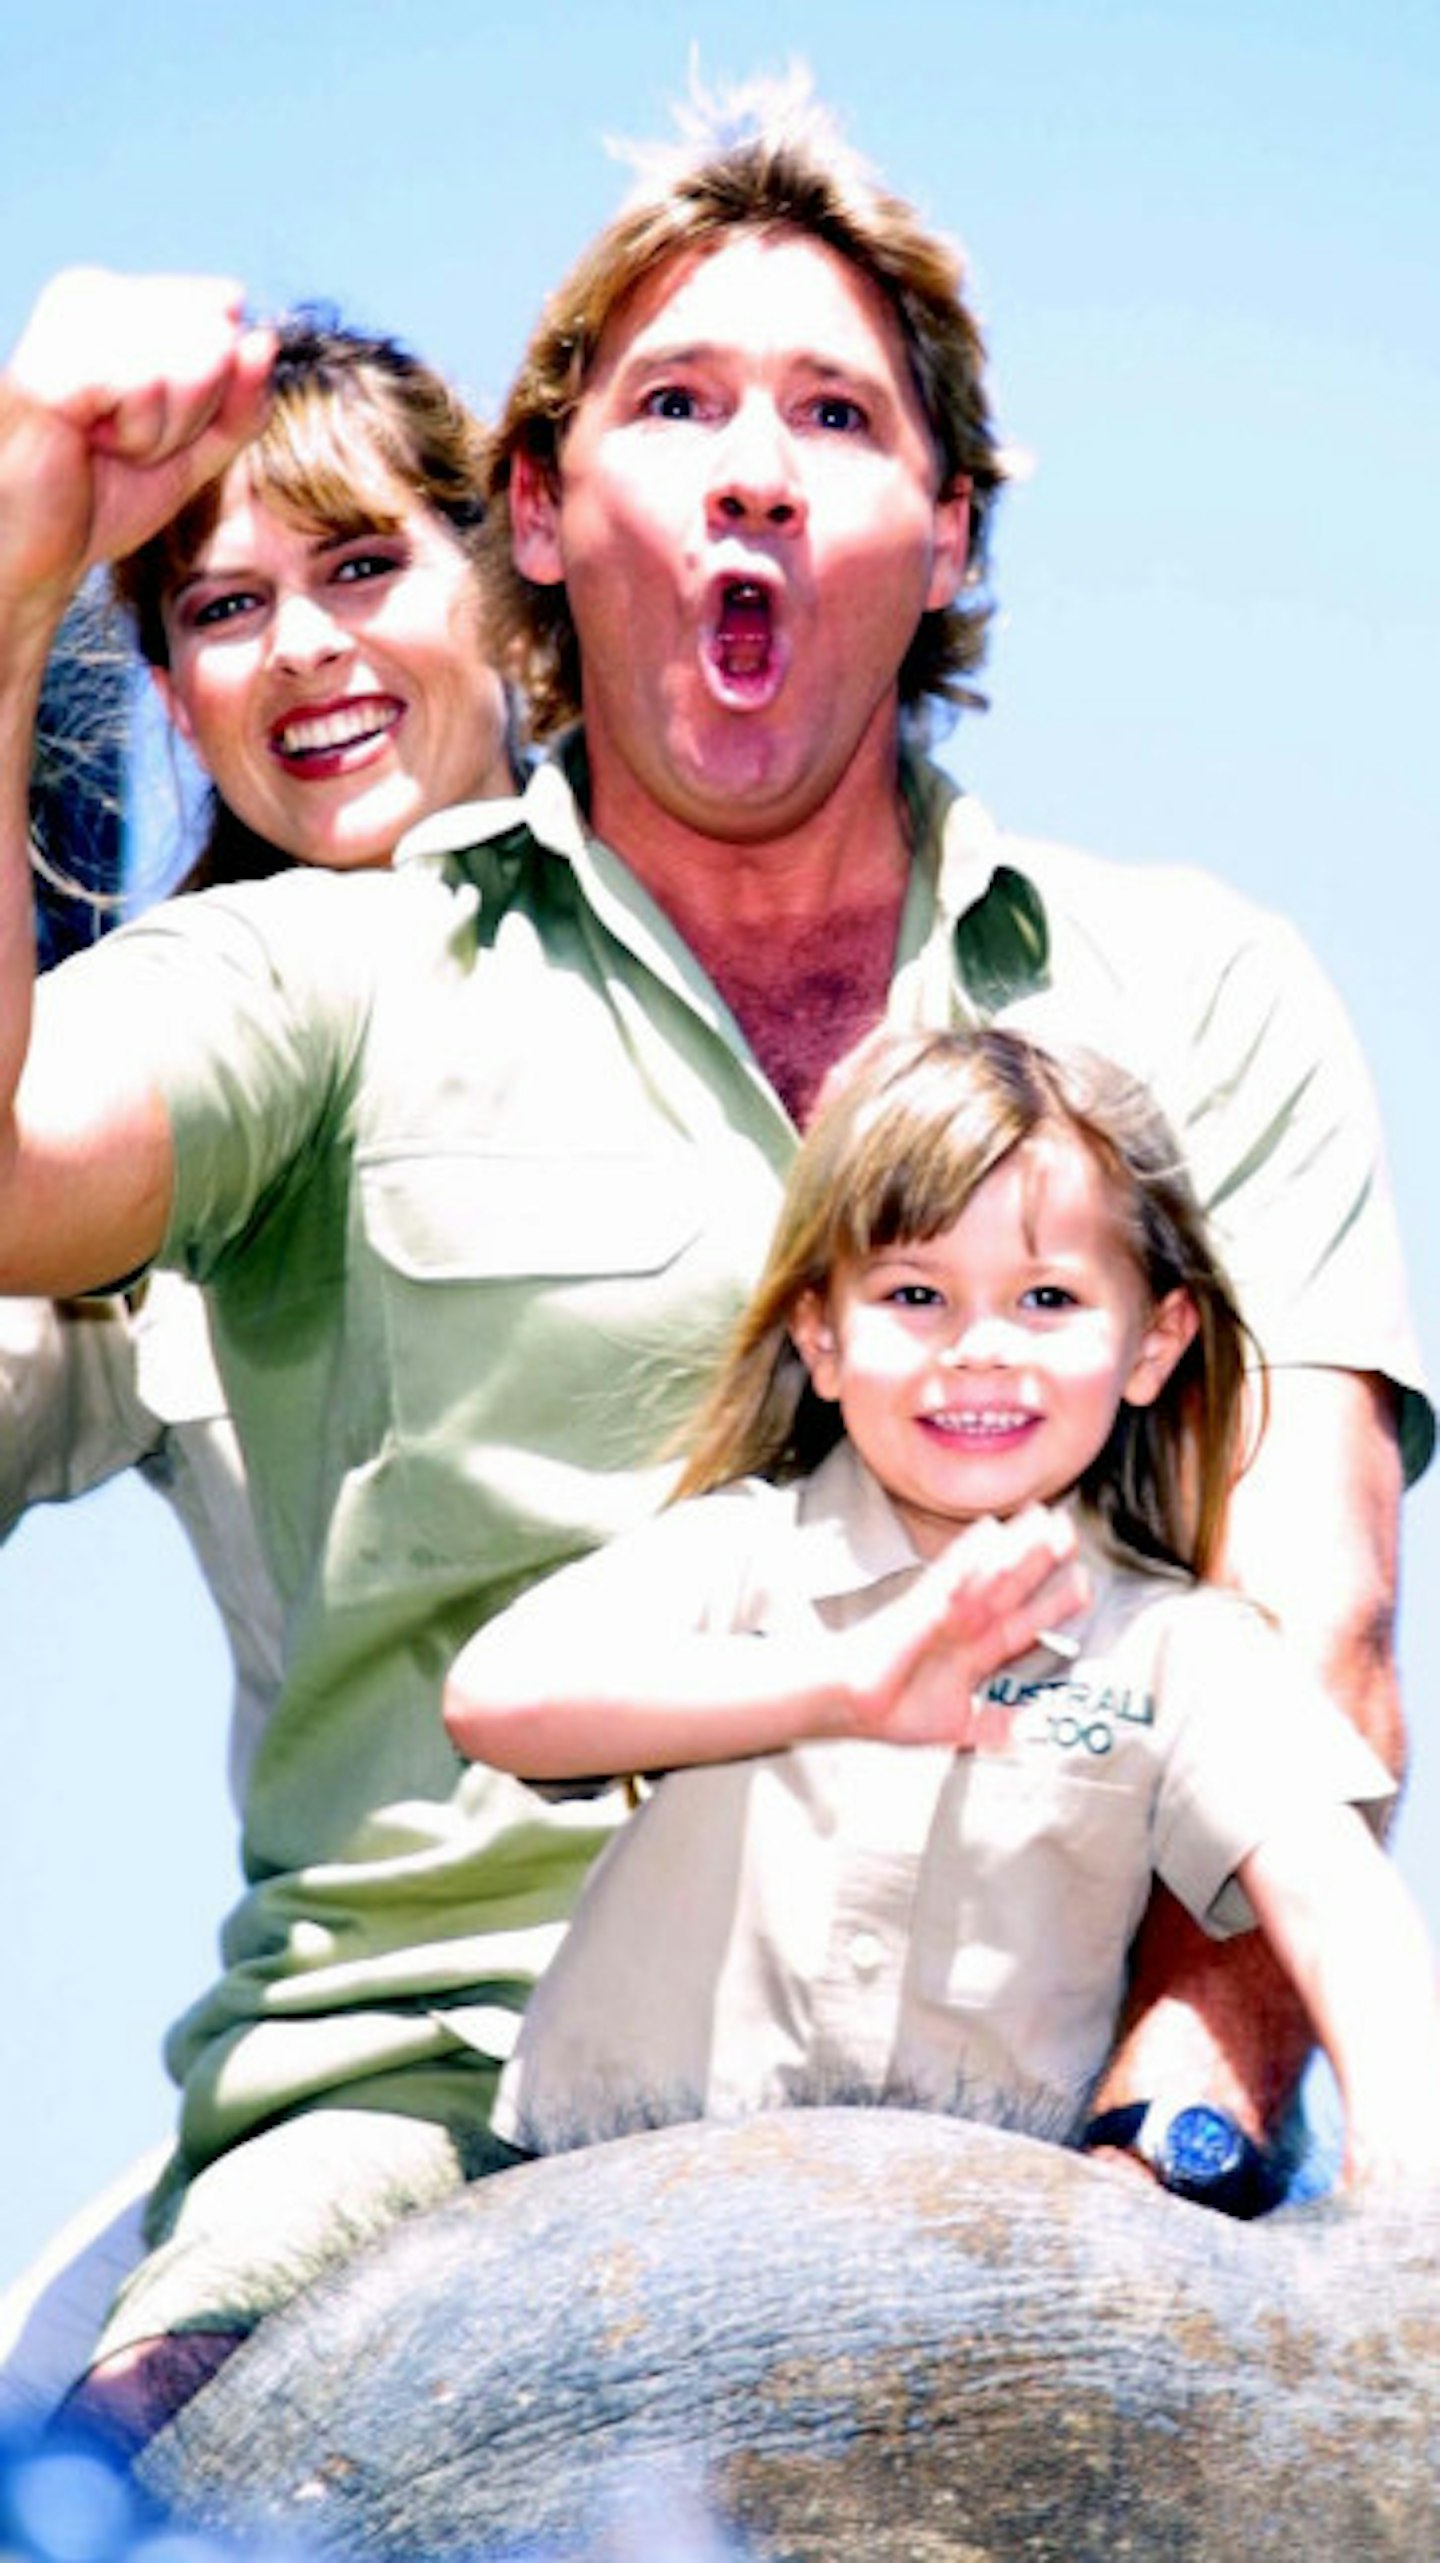 Steve Irwin with wife Terri and his daughter Bindi